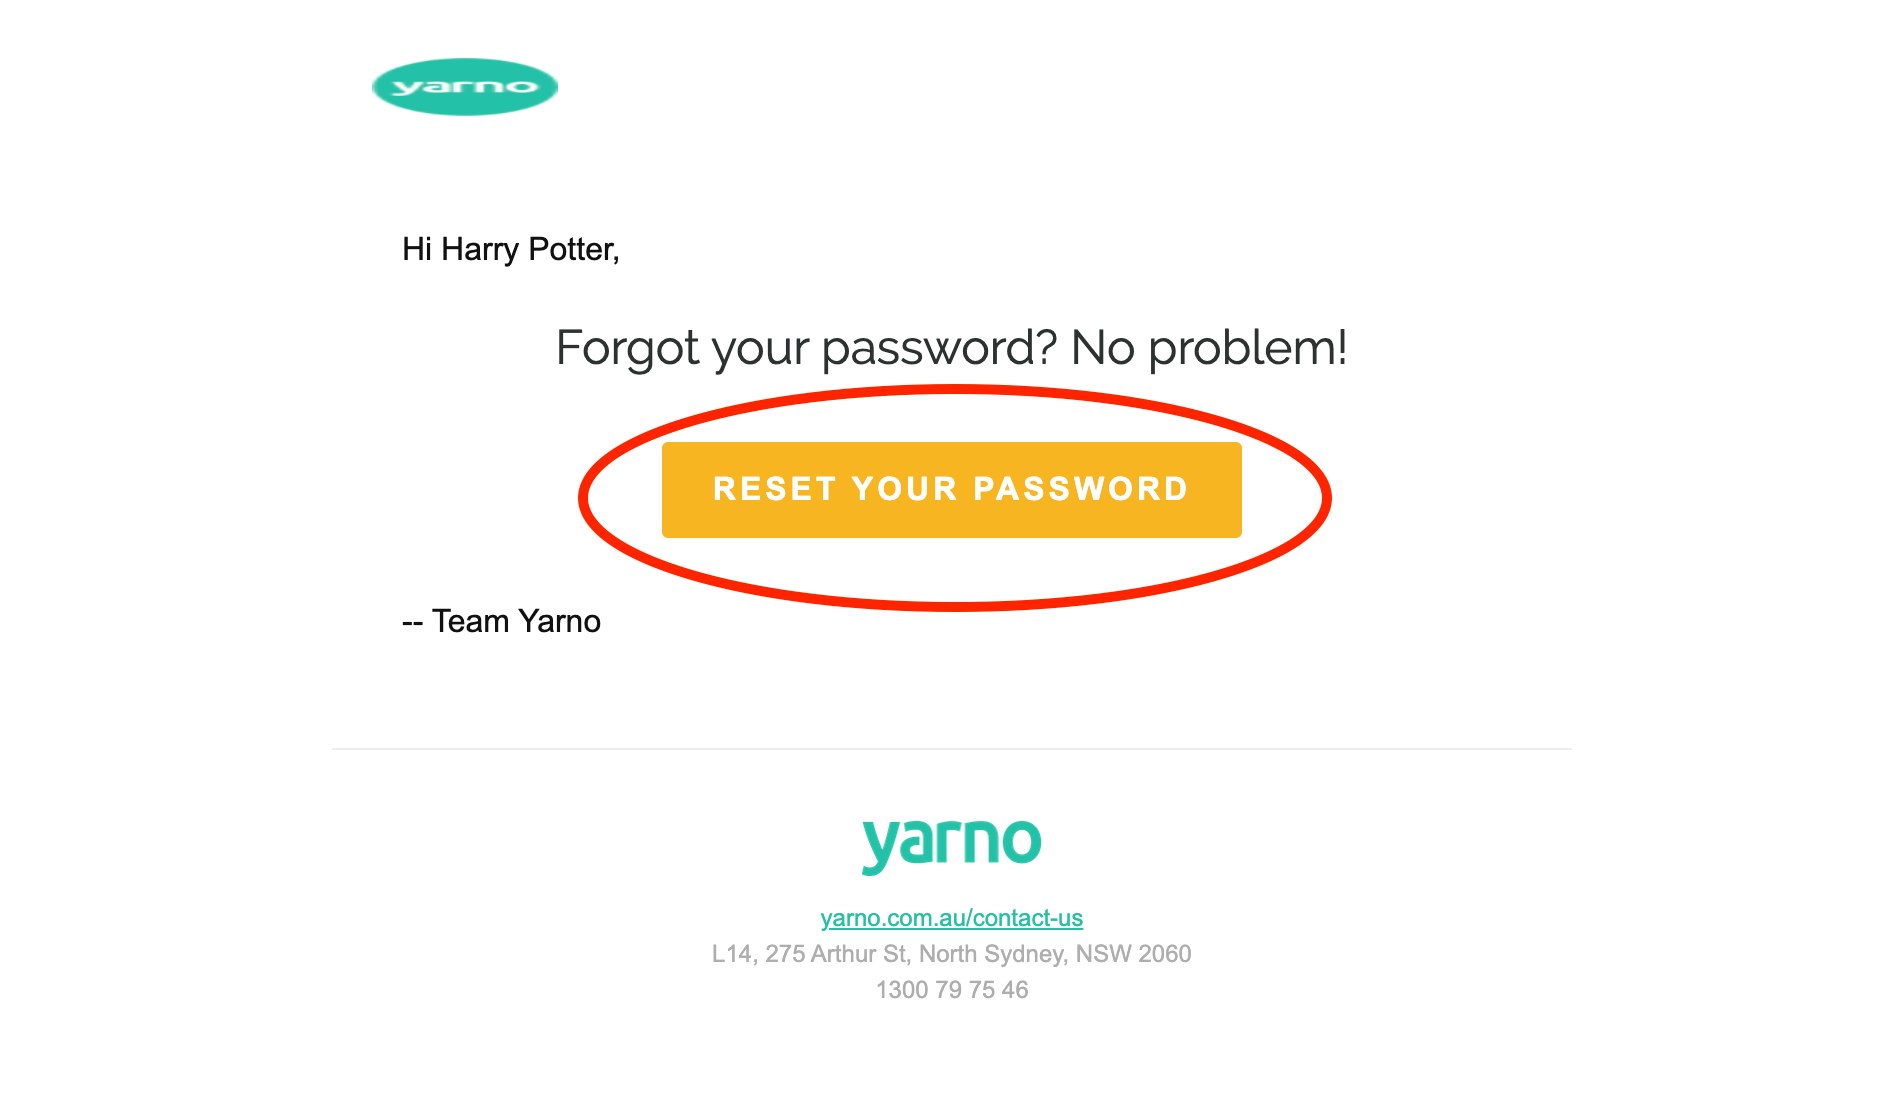 reset password screenshot